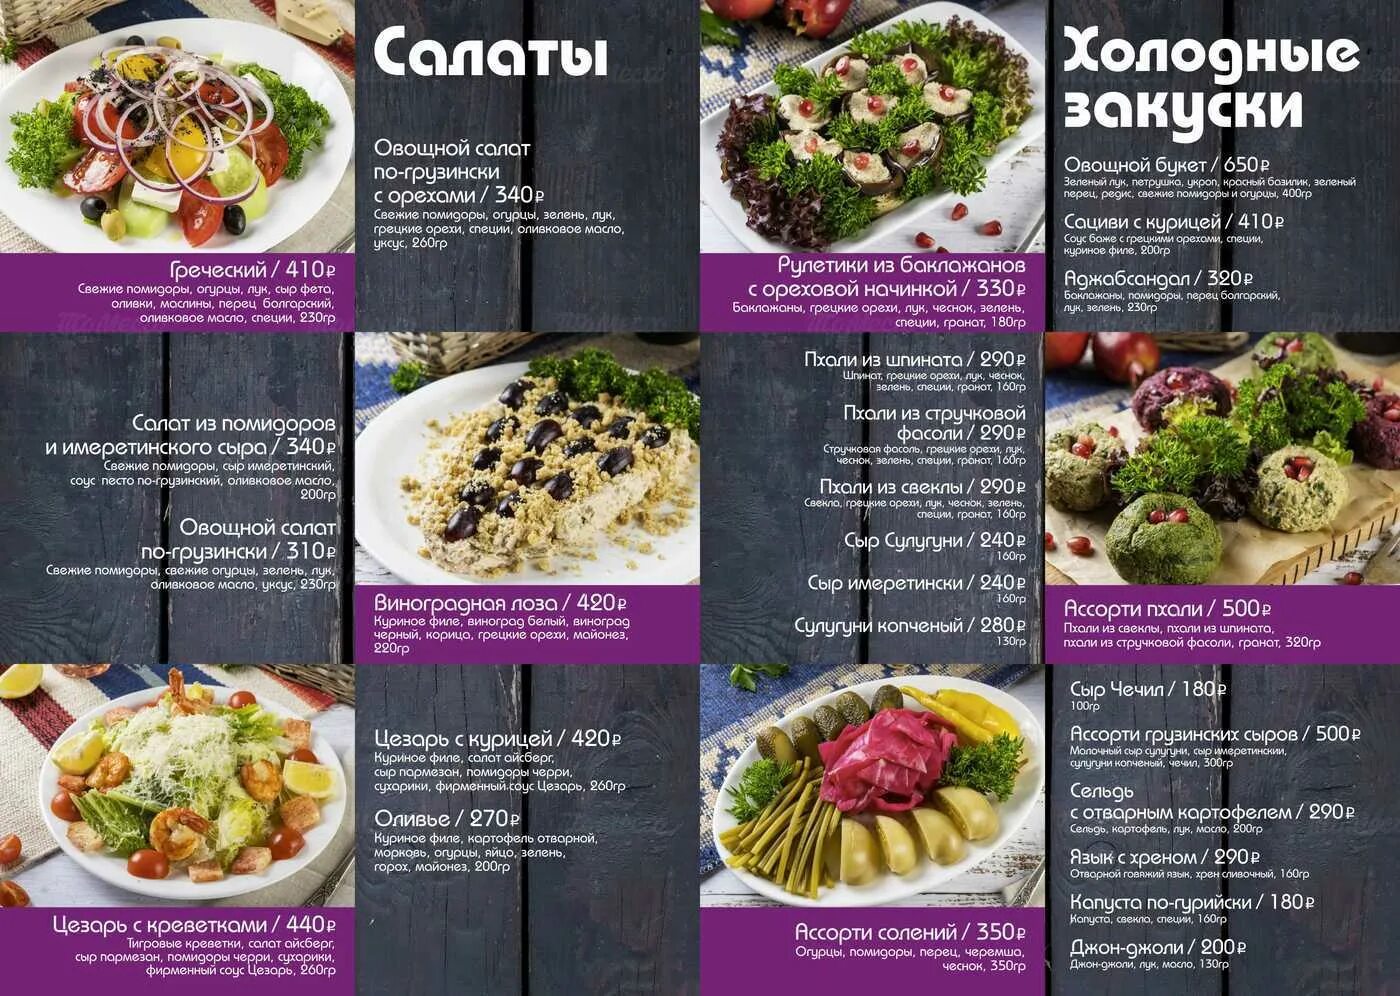 Меню кавказской кухни для кафе. Меню кавказской кухни. Меню Кавказского ресторана. Меню грузинской кухни в ресторане.